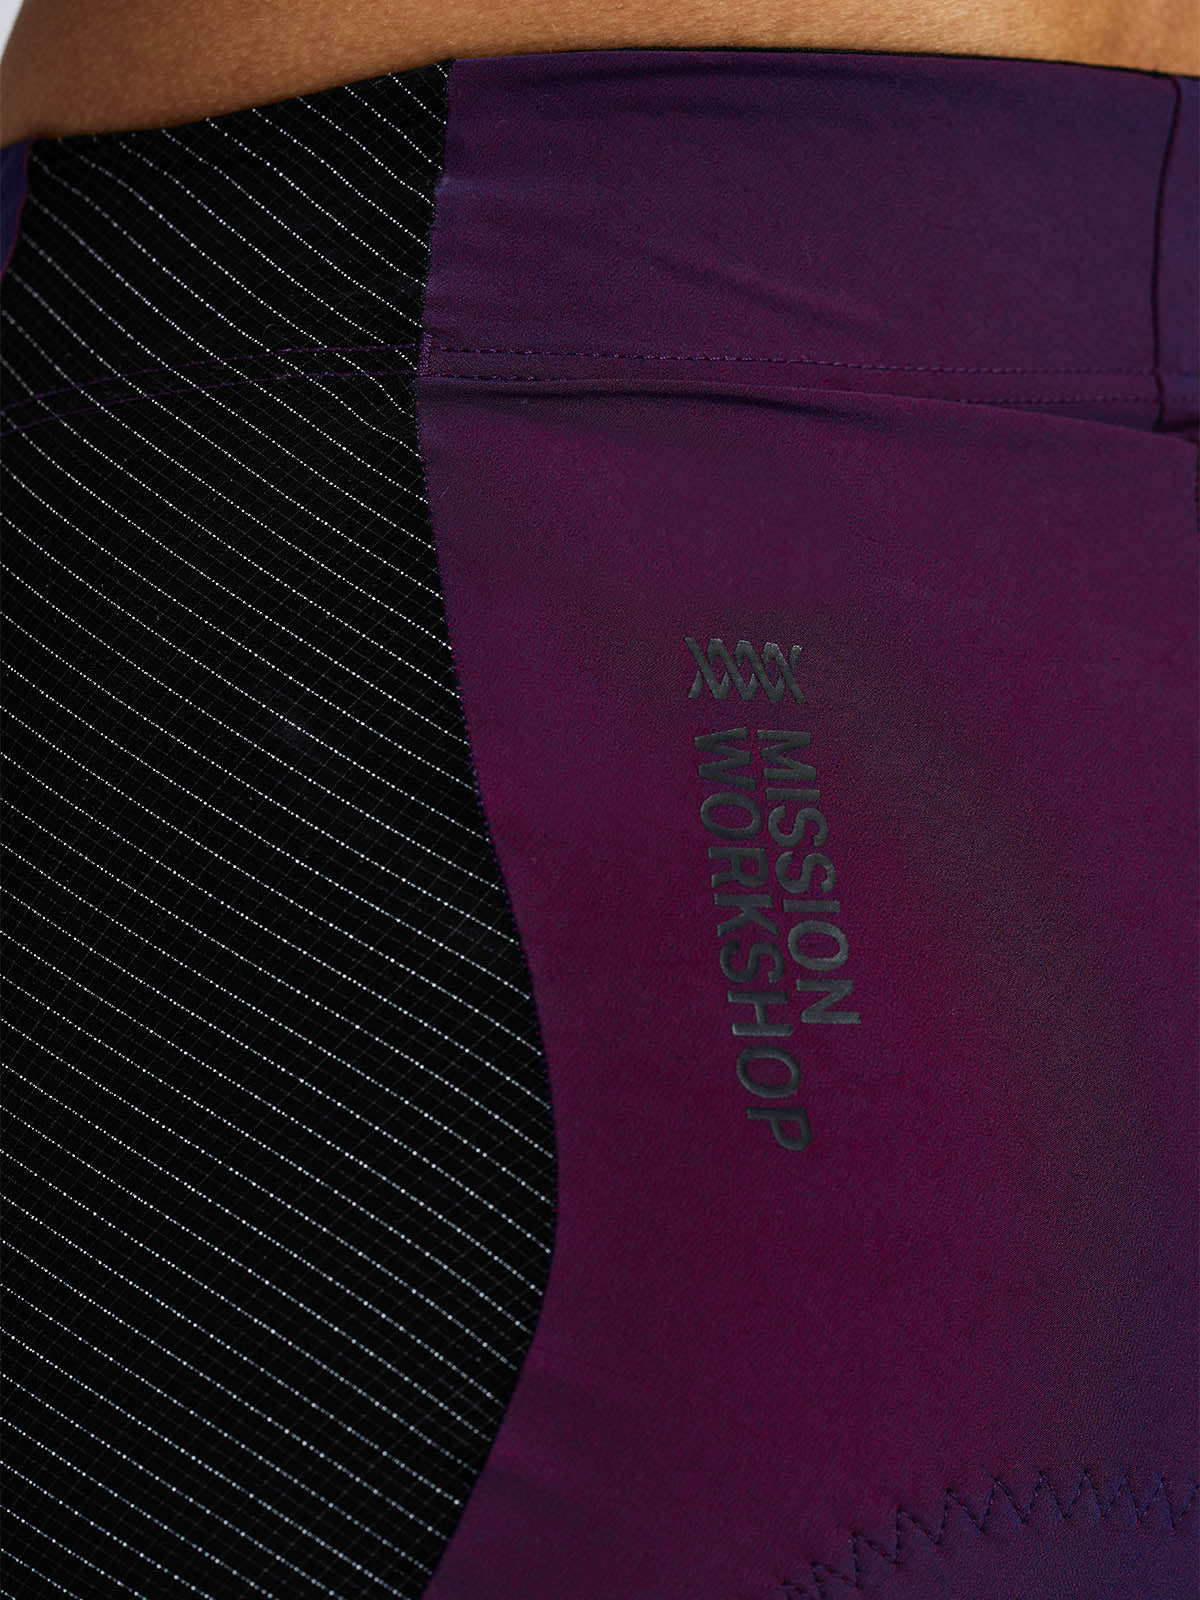 Mission Pro Short Women's by Mission Workshop - Säänkestävät laukut ja tekniset vaatteet - San Francisco & Los Angeles - Kestää - ikuisesti taattu